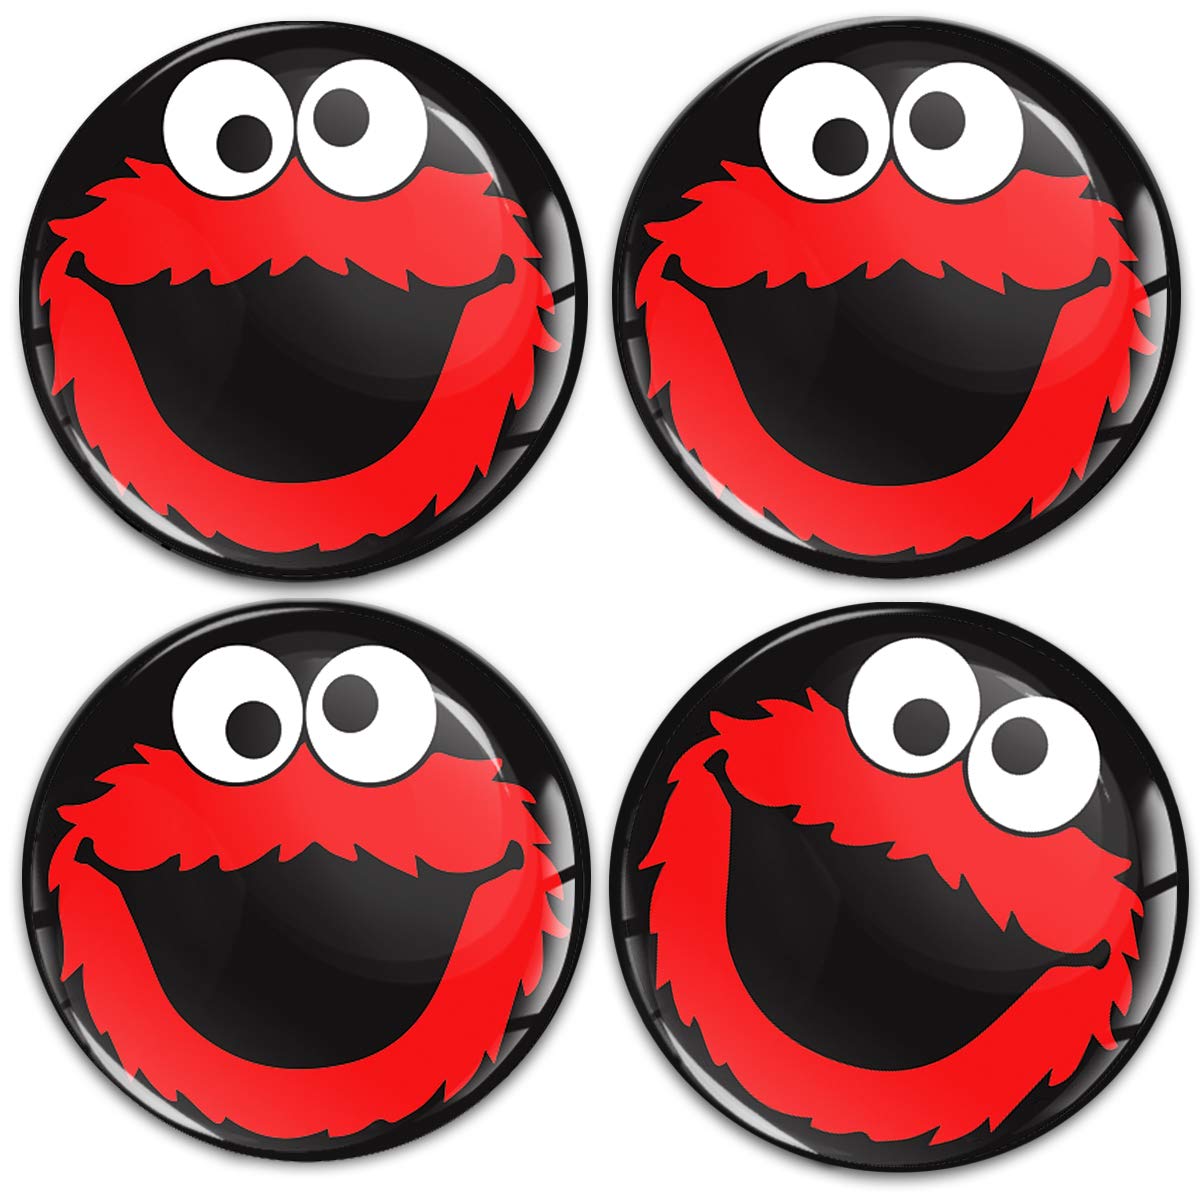 SkinoEu Aufkleber Autoaufkleber für Radkappen Nabenkappen Nabendeckel Radnabendeckel Rad-Aufkleber 70mm Schwarz Rot Elmo Cookie Monster A 5970 von Skino